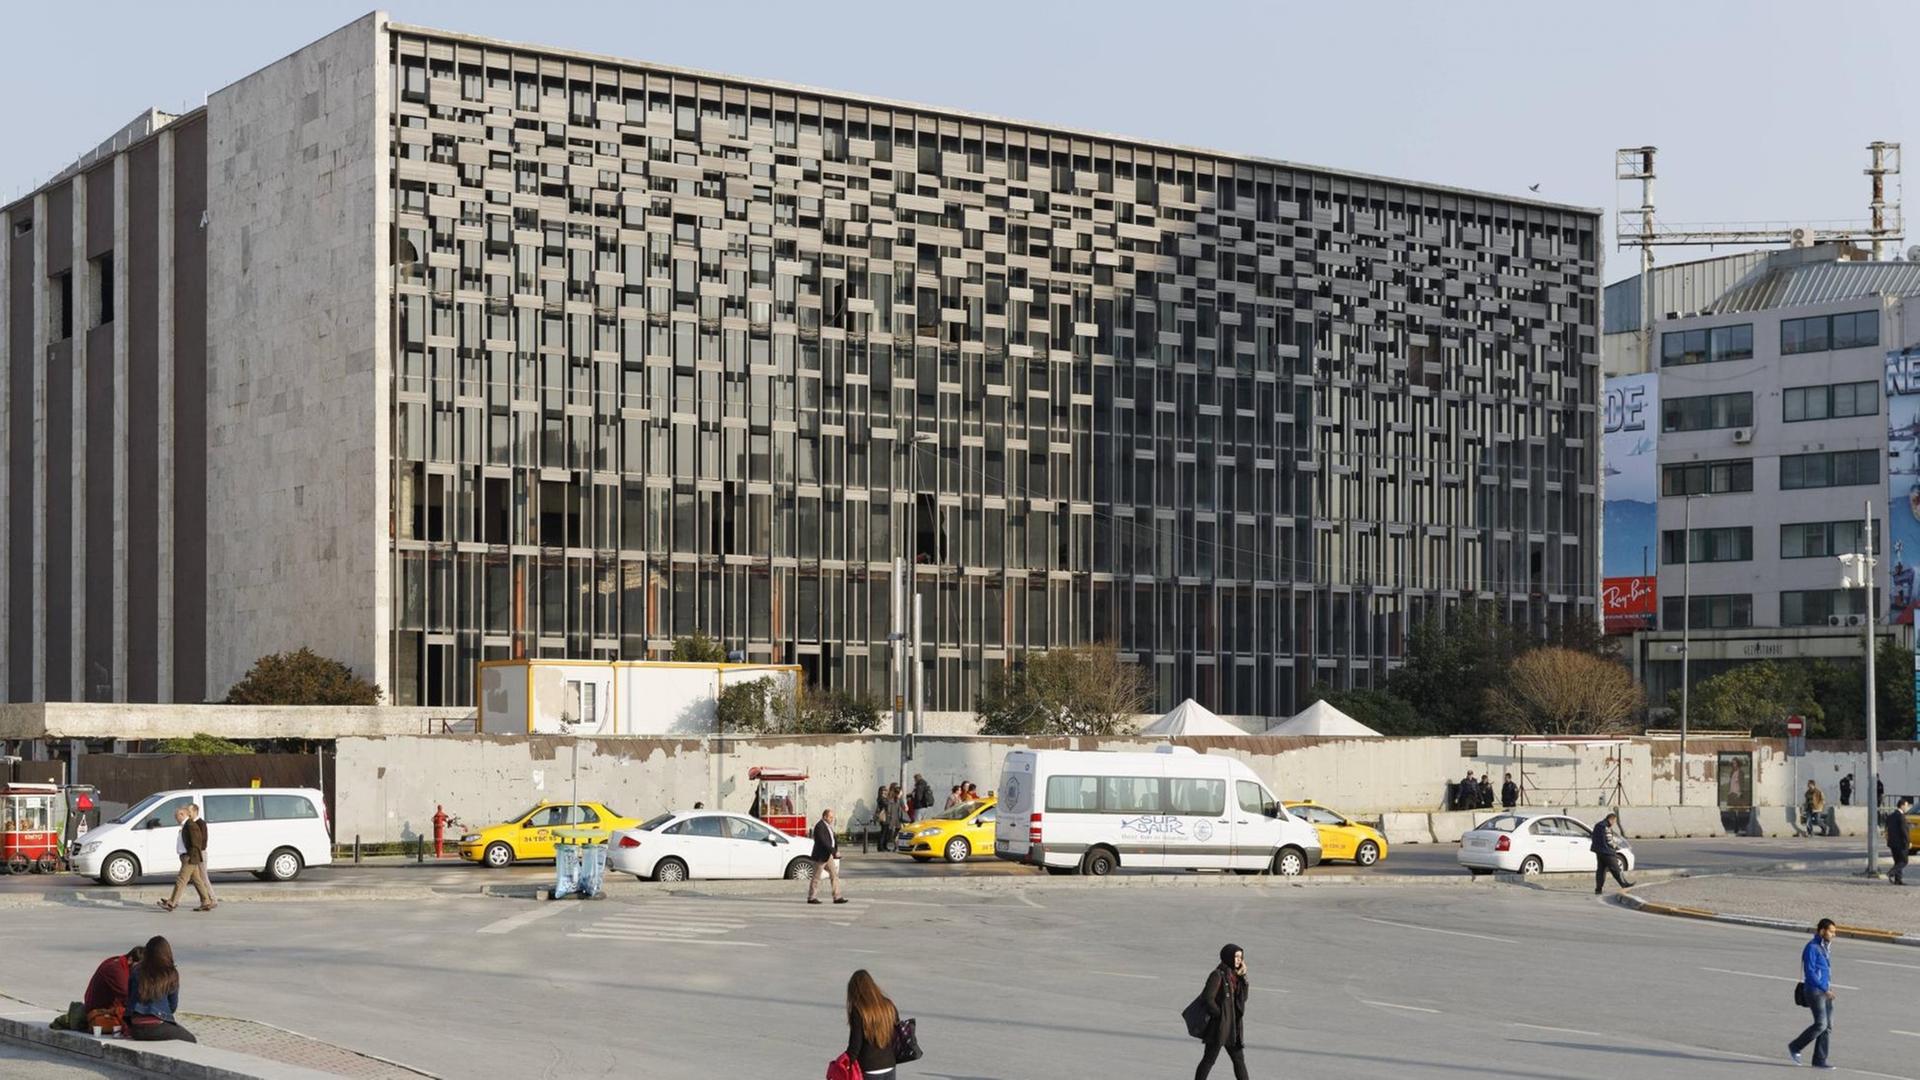 Das Atatürk-Kulturzentrum im November 2017 auf dem Taksim-Platz in Istanbul. Ein Gebäude auf einem weiitläufigen Platz mit Passanten davor.